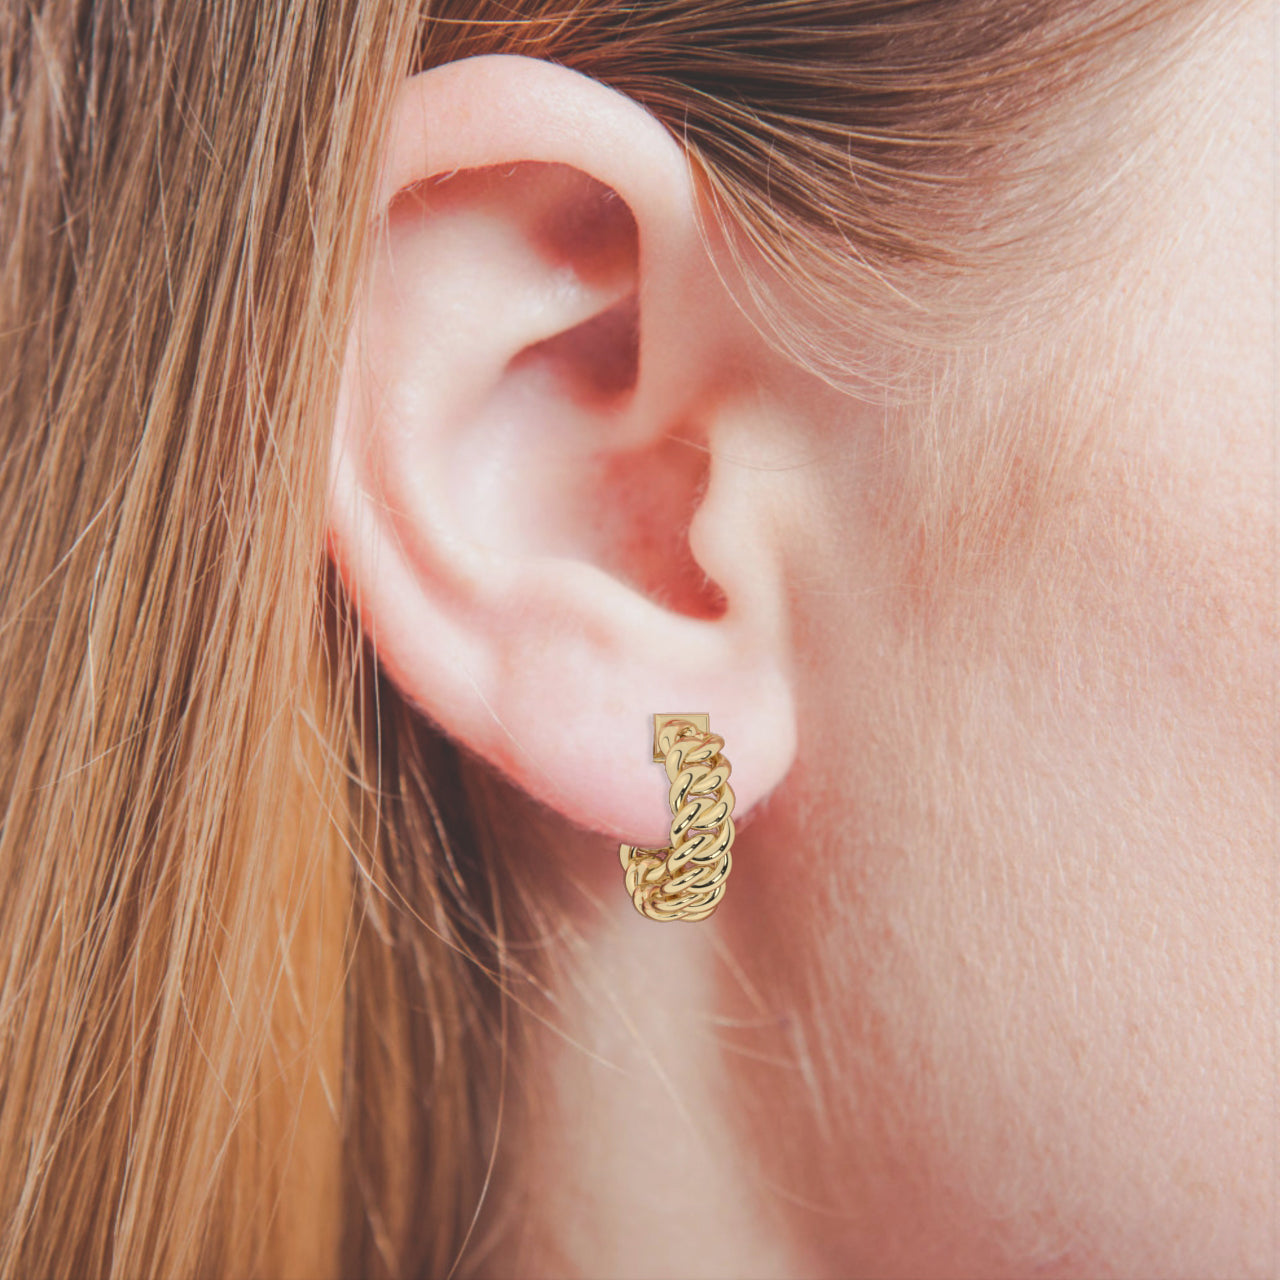 Gold Round Shape Earrings | Gold Filled Earrings | Huggie Earrings | Minimalist Earrings